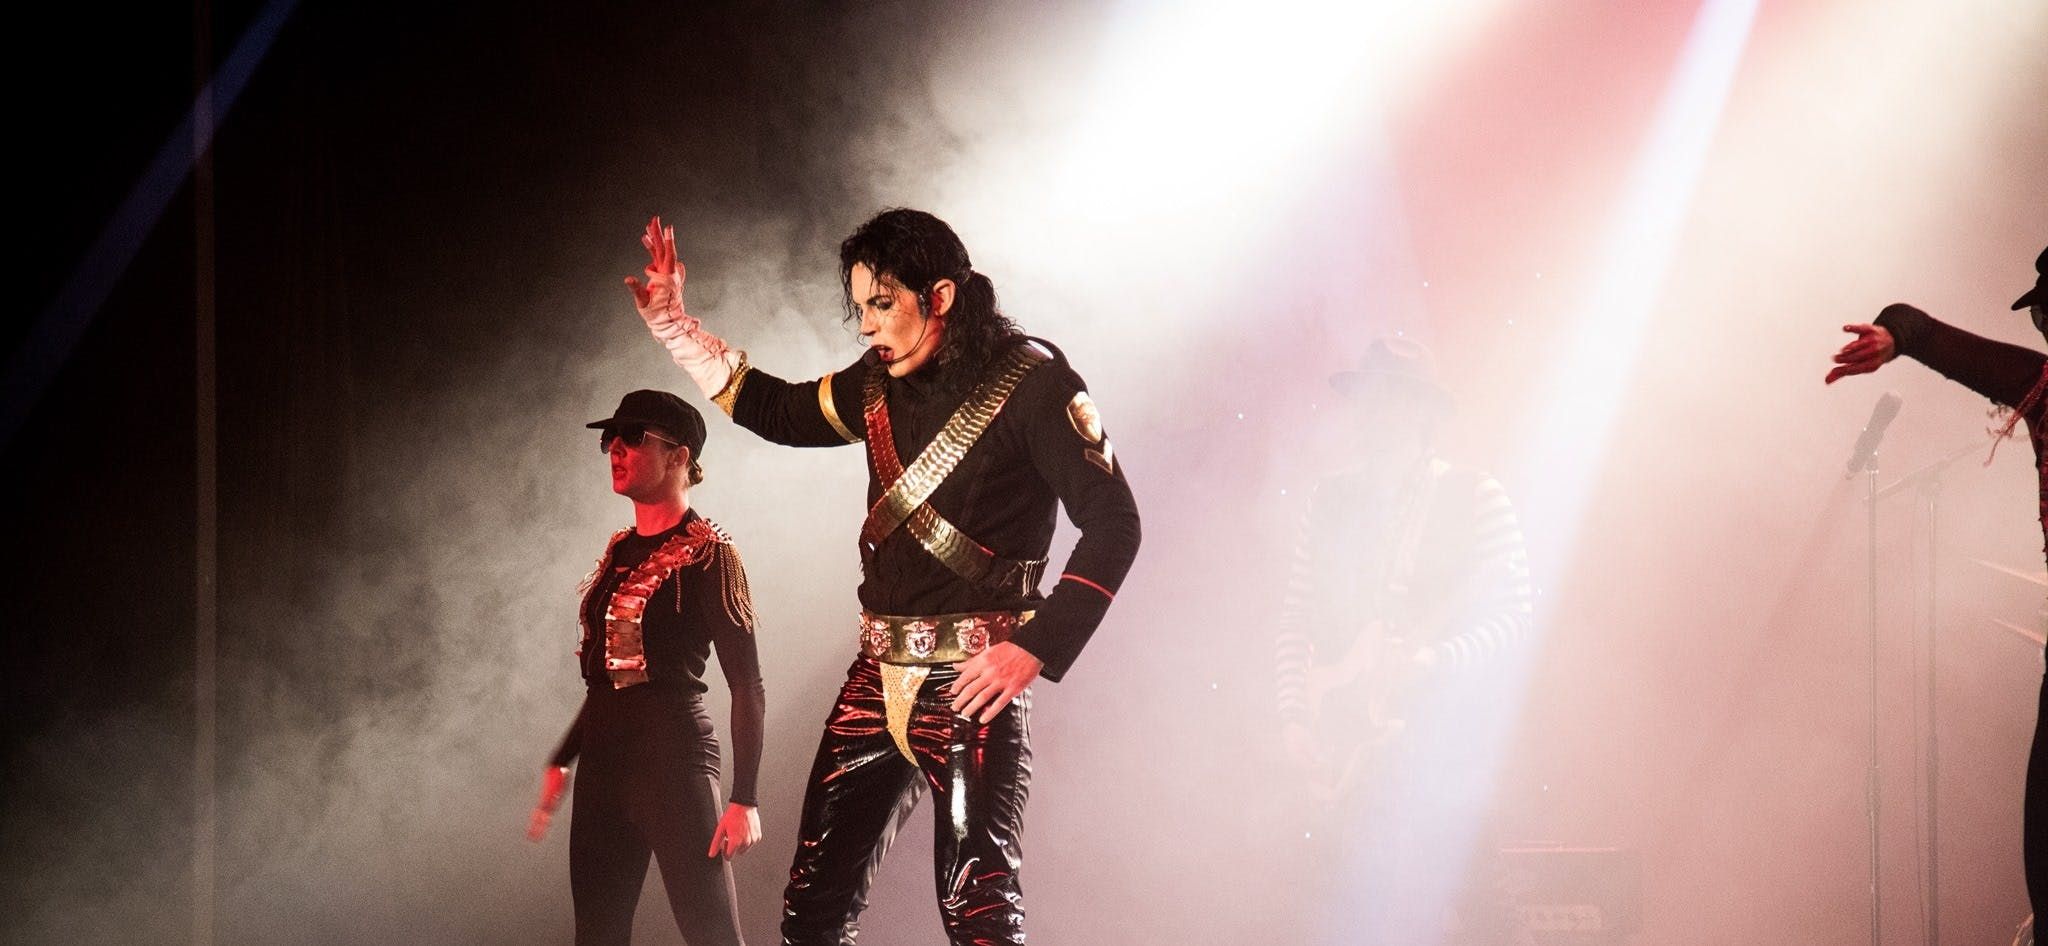 Imagen del tour: Michael Jackson El legado show en vivo